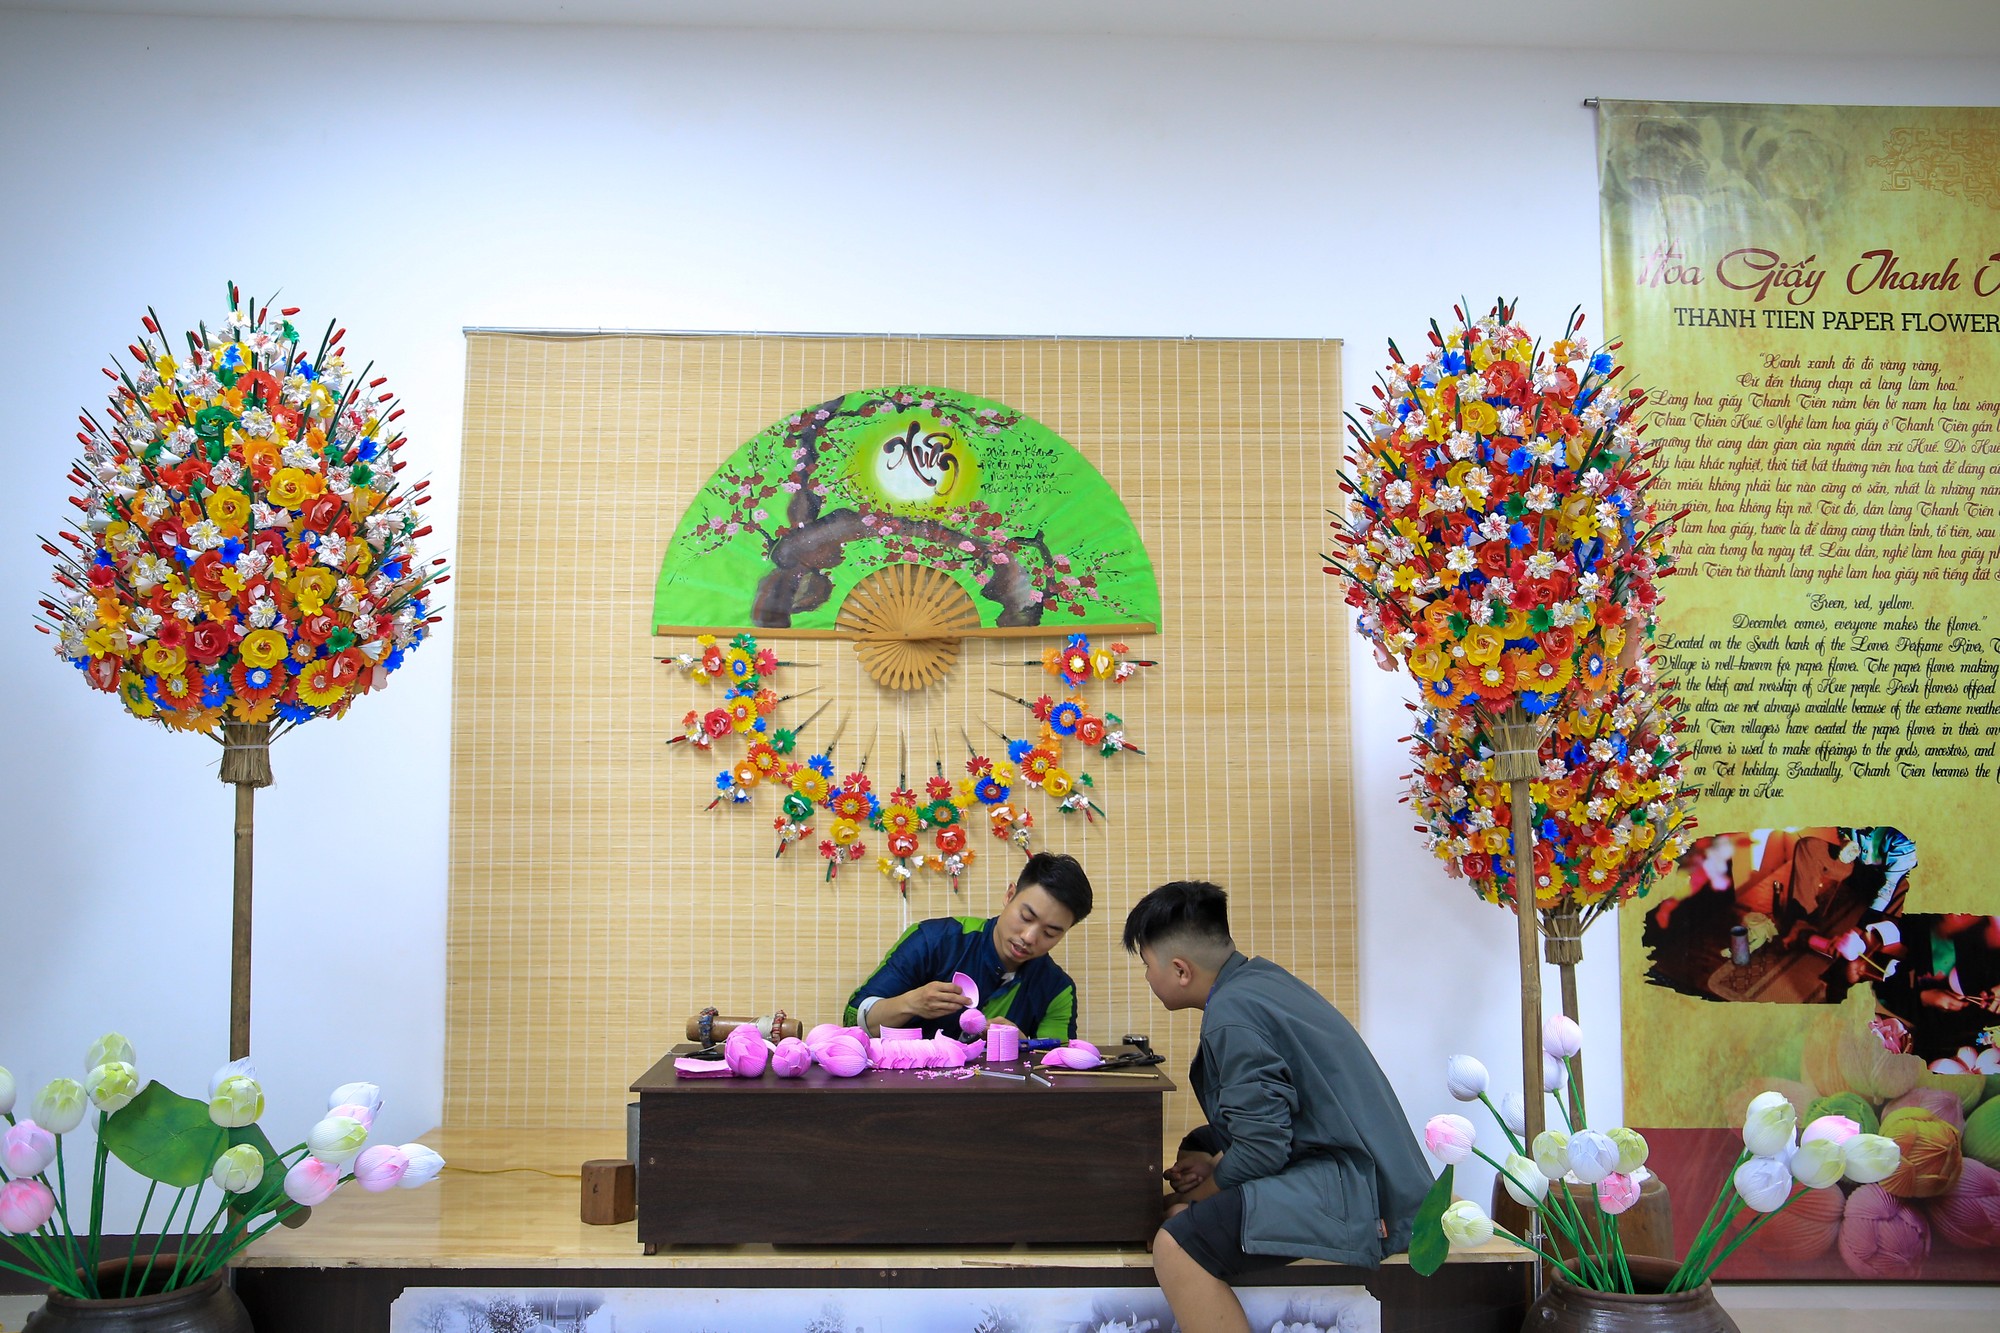 Làng nghề hoa giấy Thanh Tiên nổi tiếng xứ Huế với đa dạng các loại hoa làm bằng giấy, phục vụ tín ngưỡng thờ cúng và trang trí nhà cửa trong những ngày Tết.